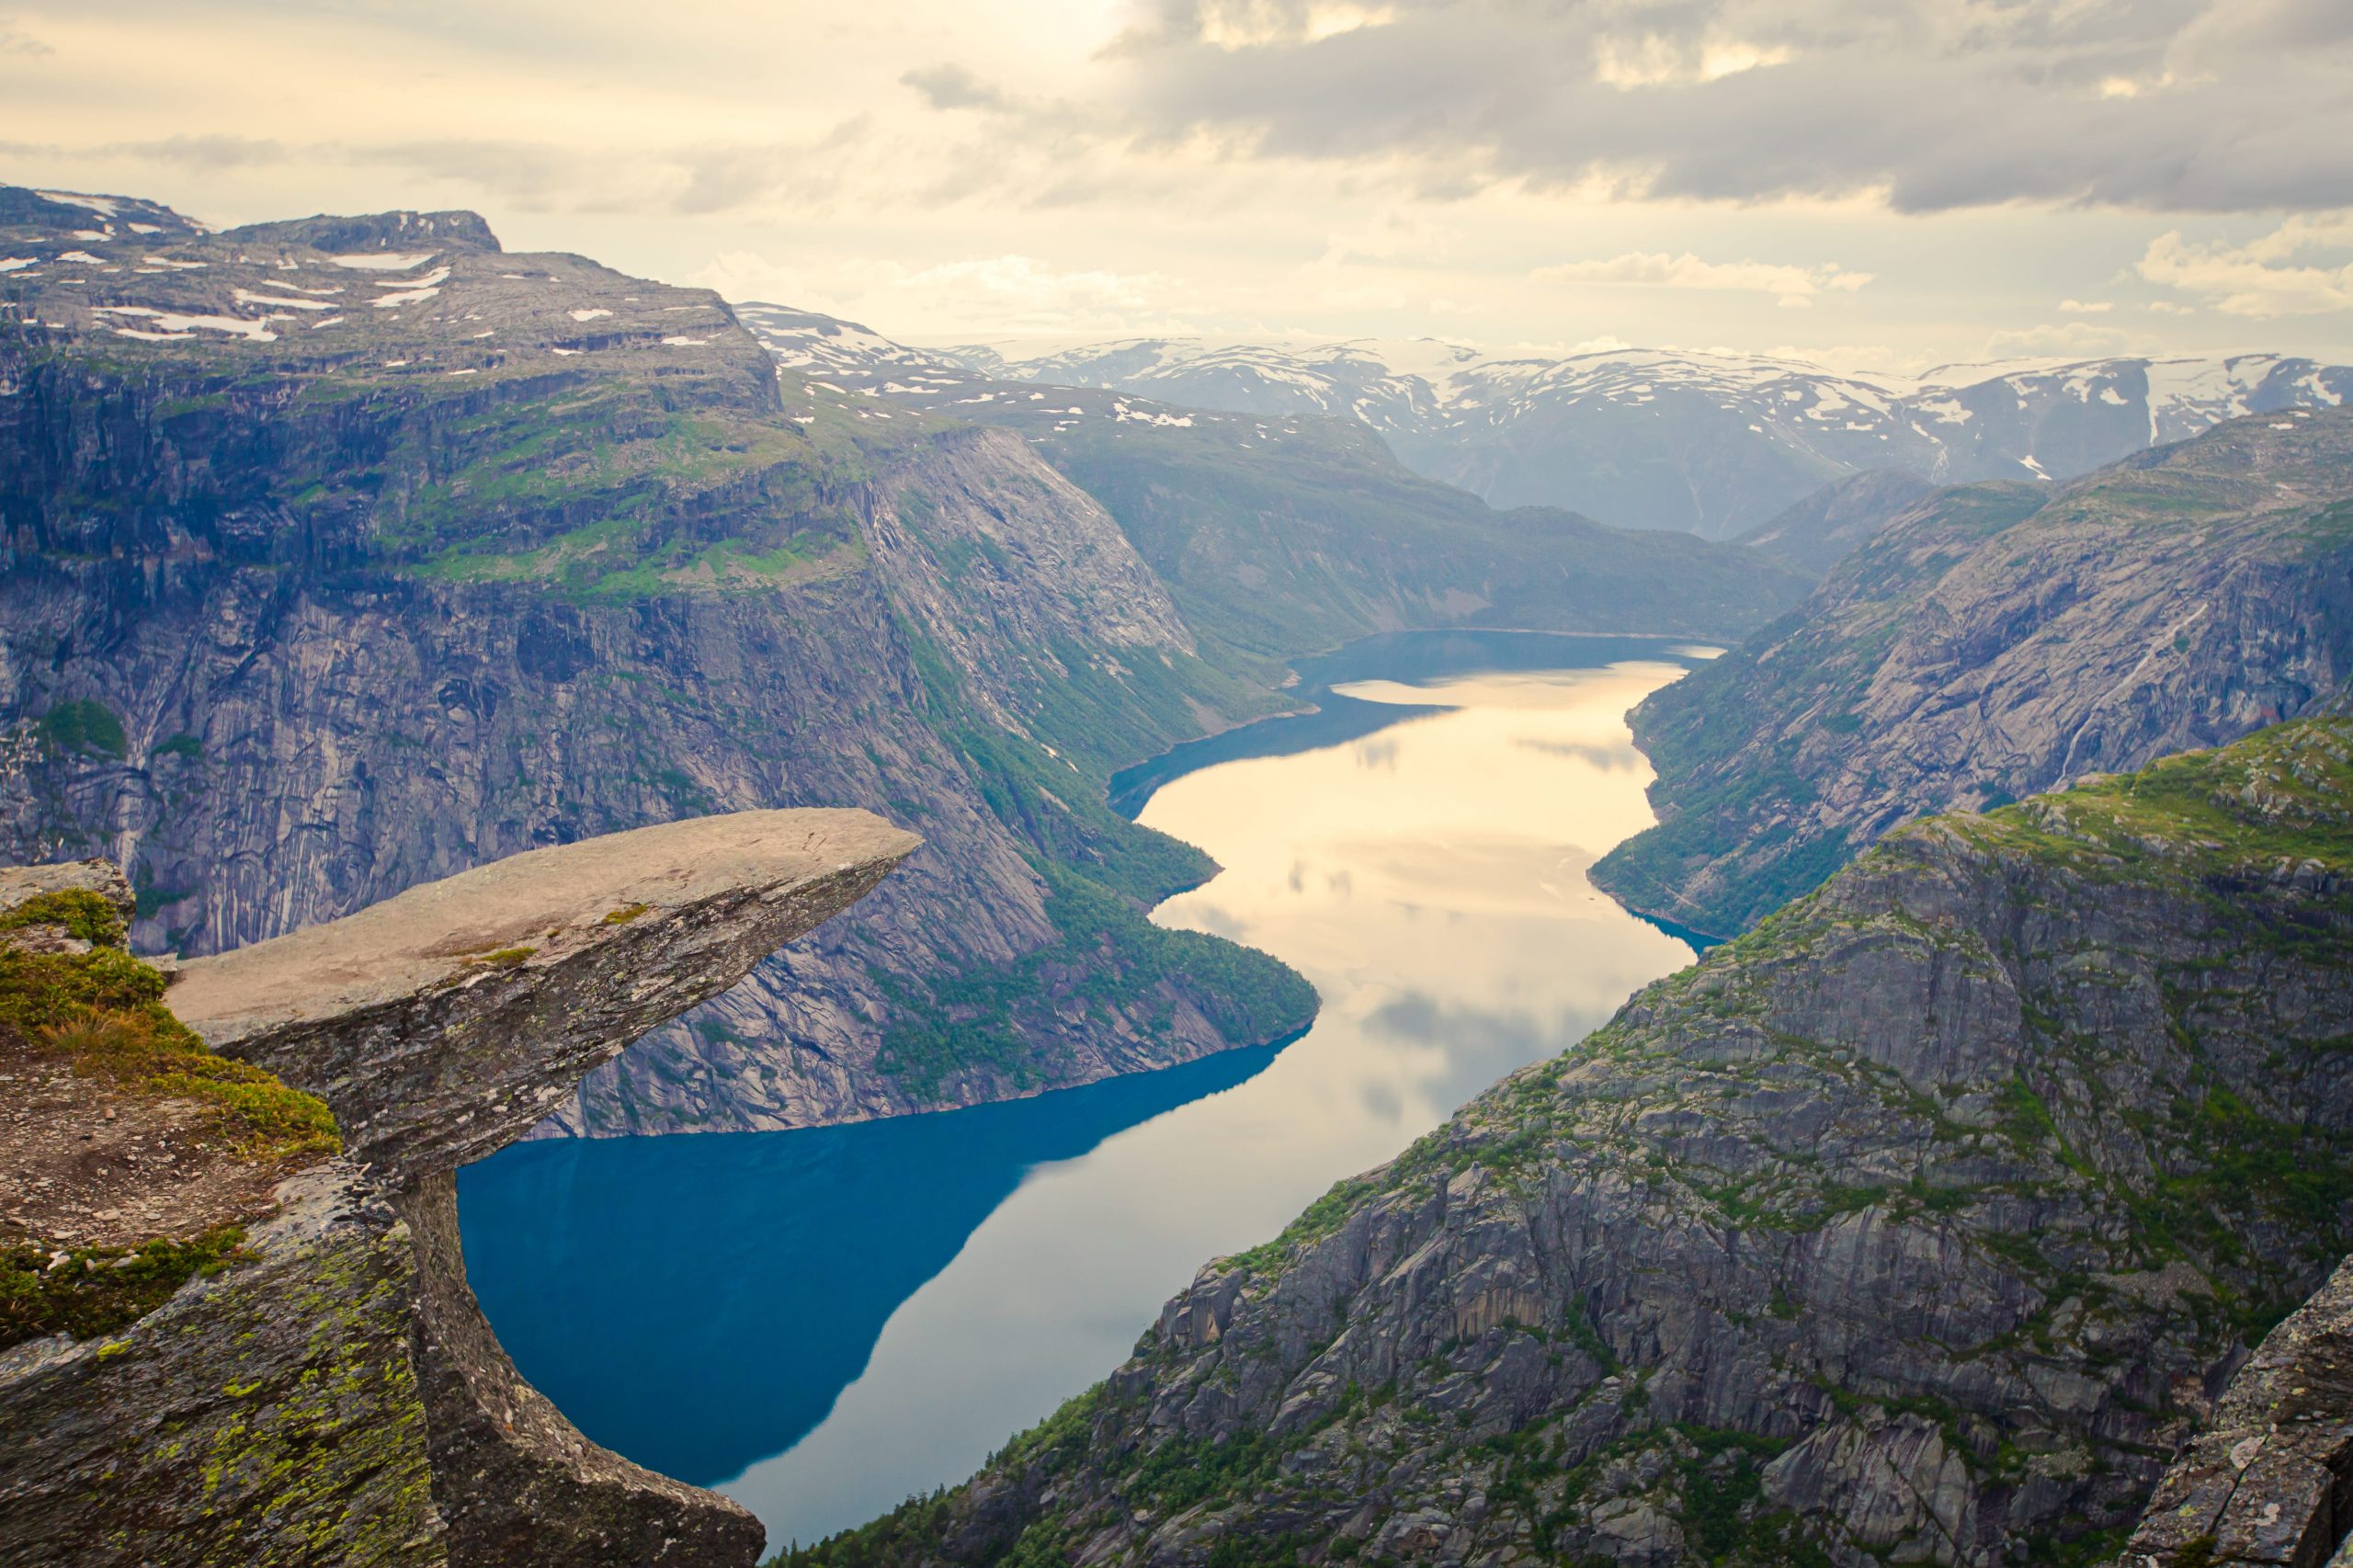 Guia da Escandinávia: O essencial que você precisa saber antes de ir